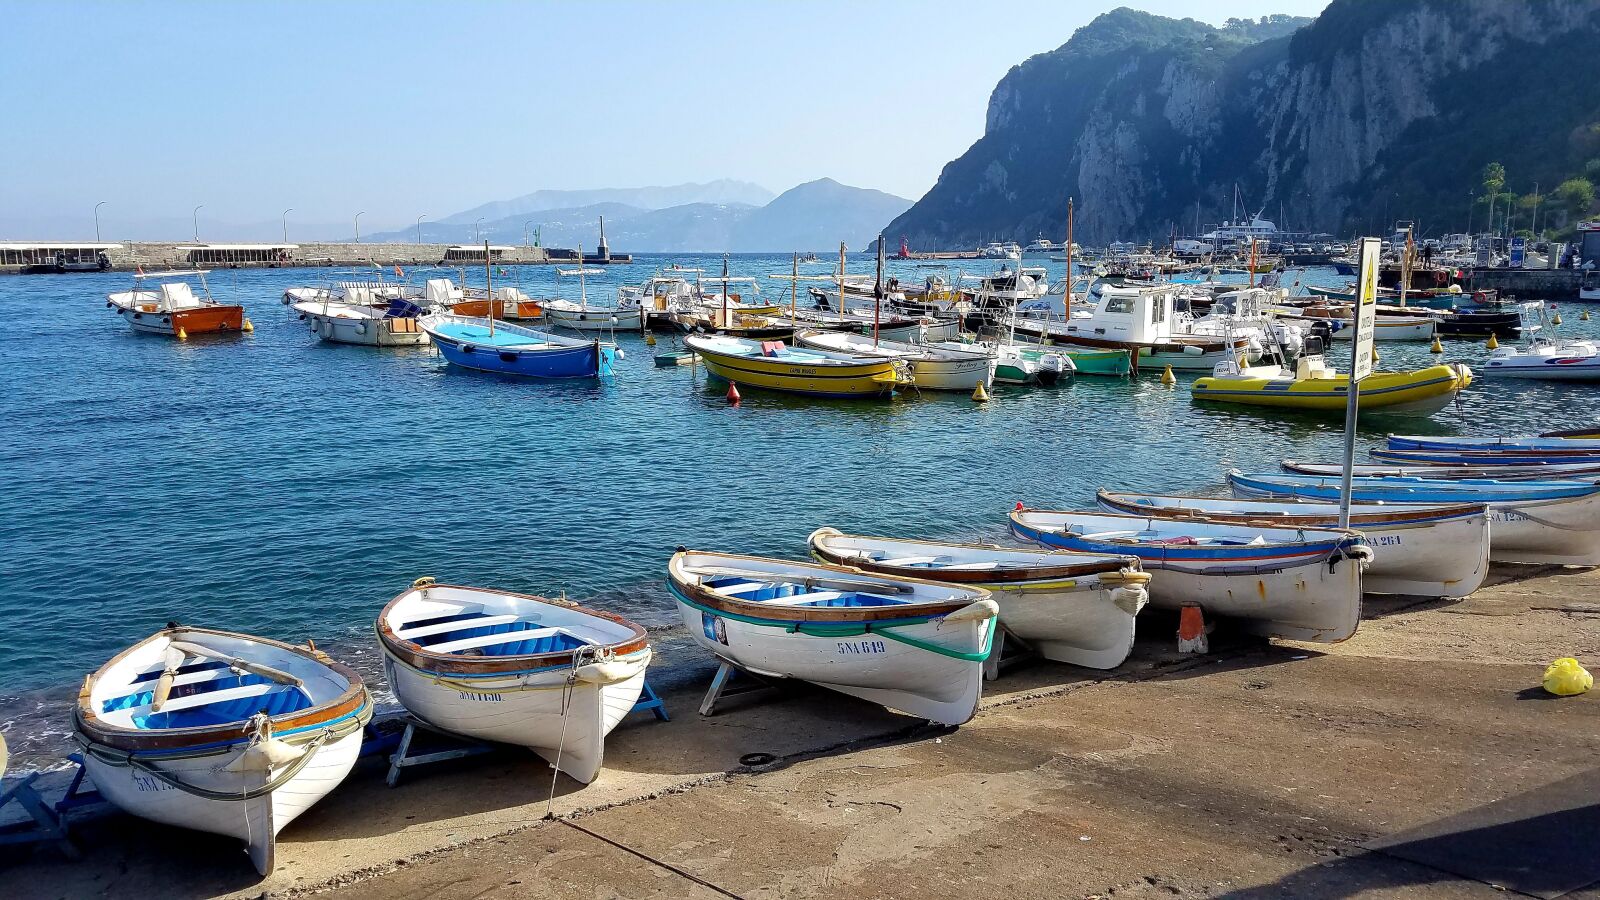 Samsung Galaxy S7 sample photo. Capri, boats, harbor photography